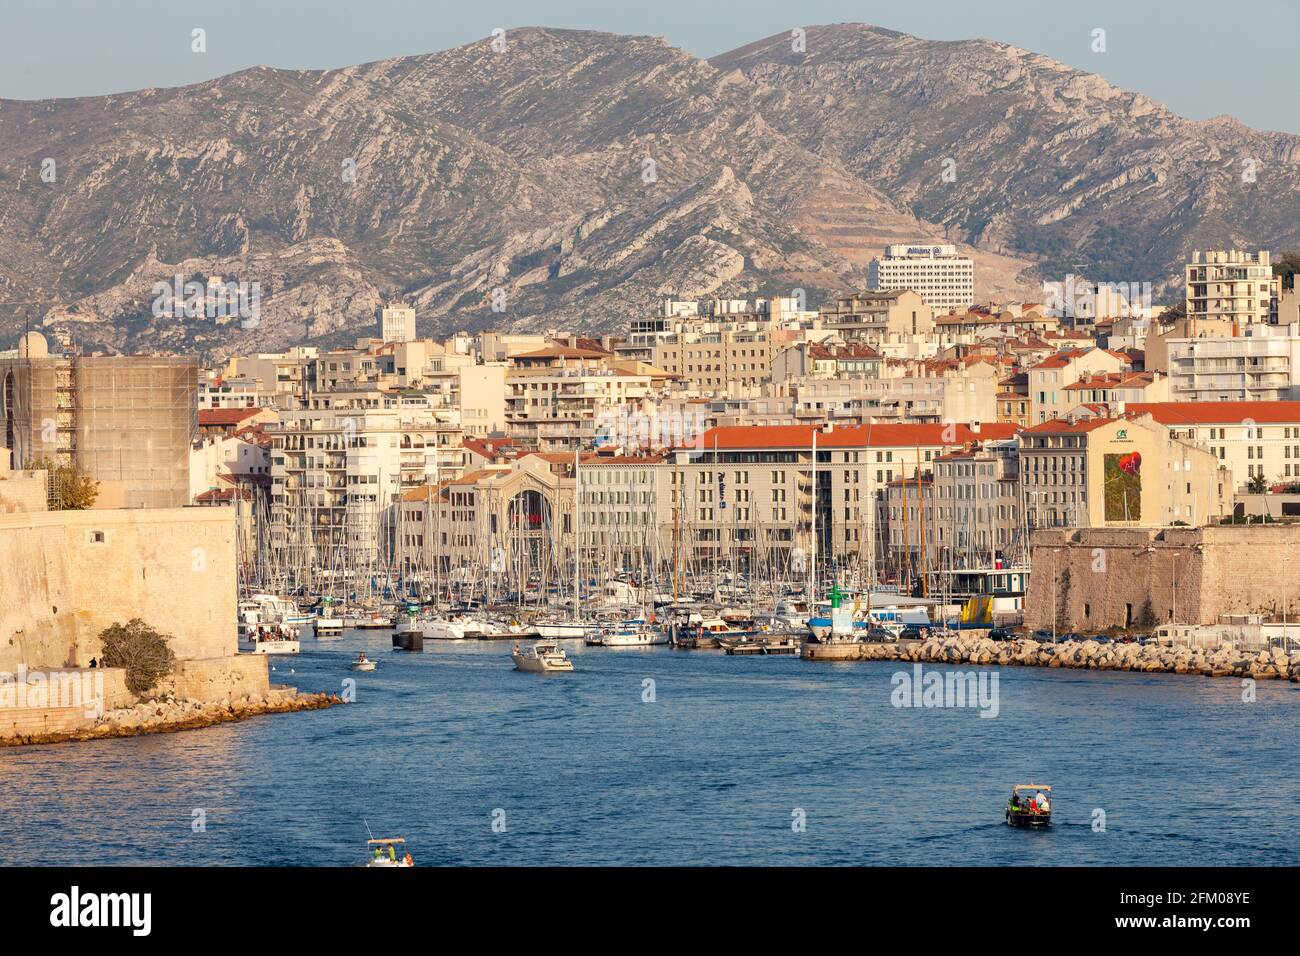 Vieux port de Marseille, vu de la mer. Provence, France Banque D'Images